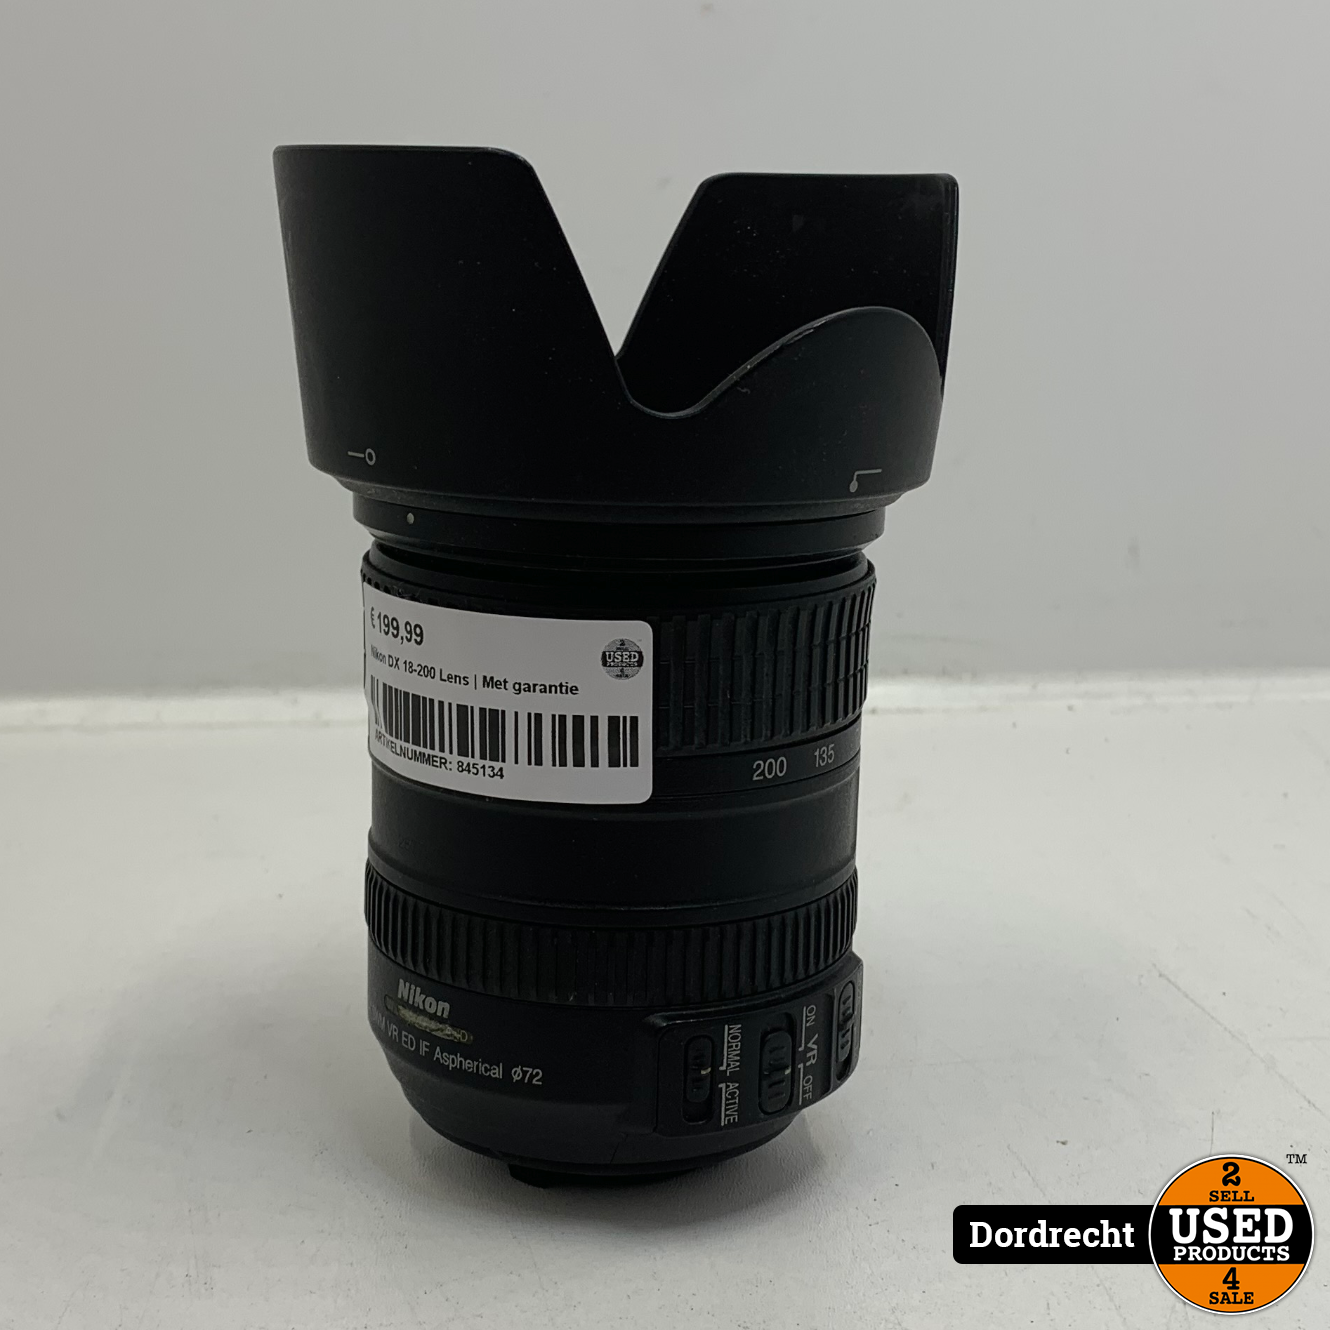 Nikon Af S Dx Nikkor 18 0mm F 3 5 5 6g Ed Vr Lens Met Garantie Used Products Dordrecht